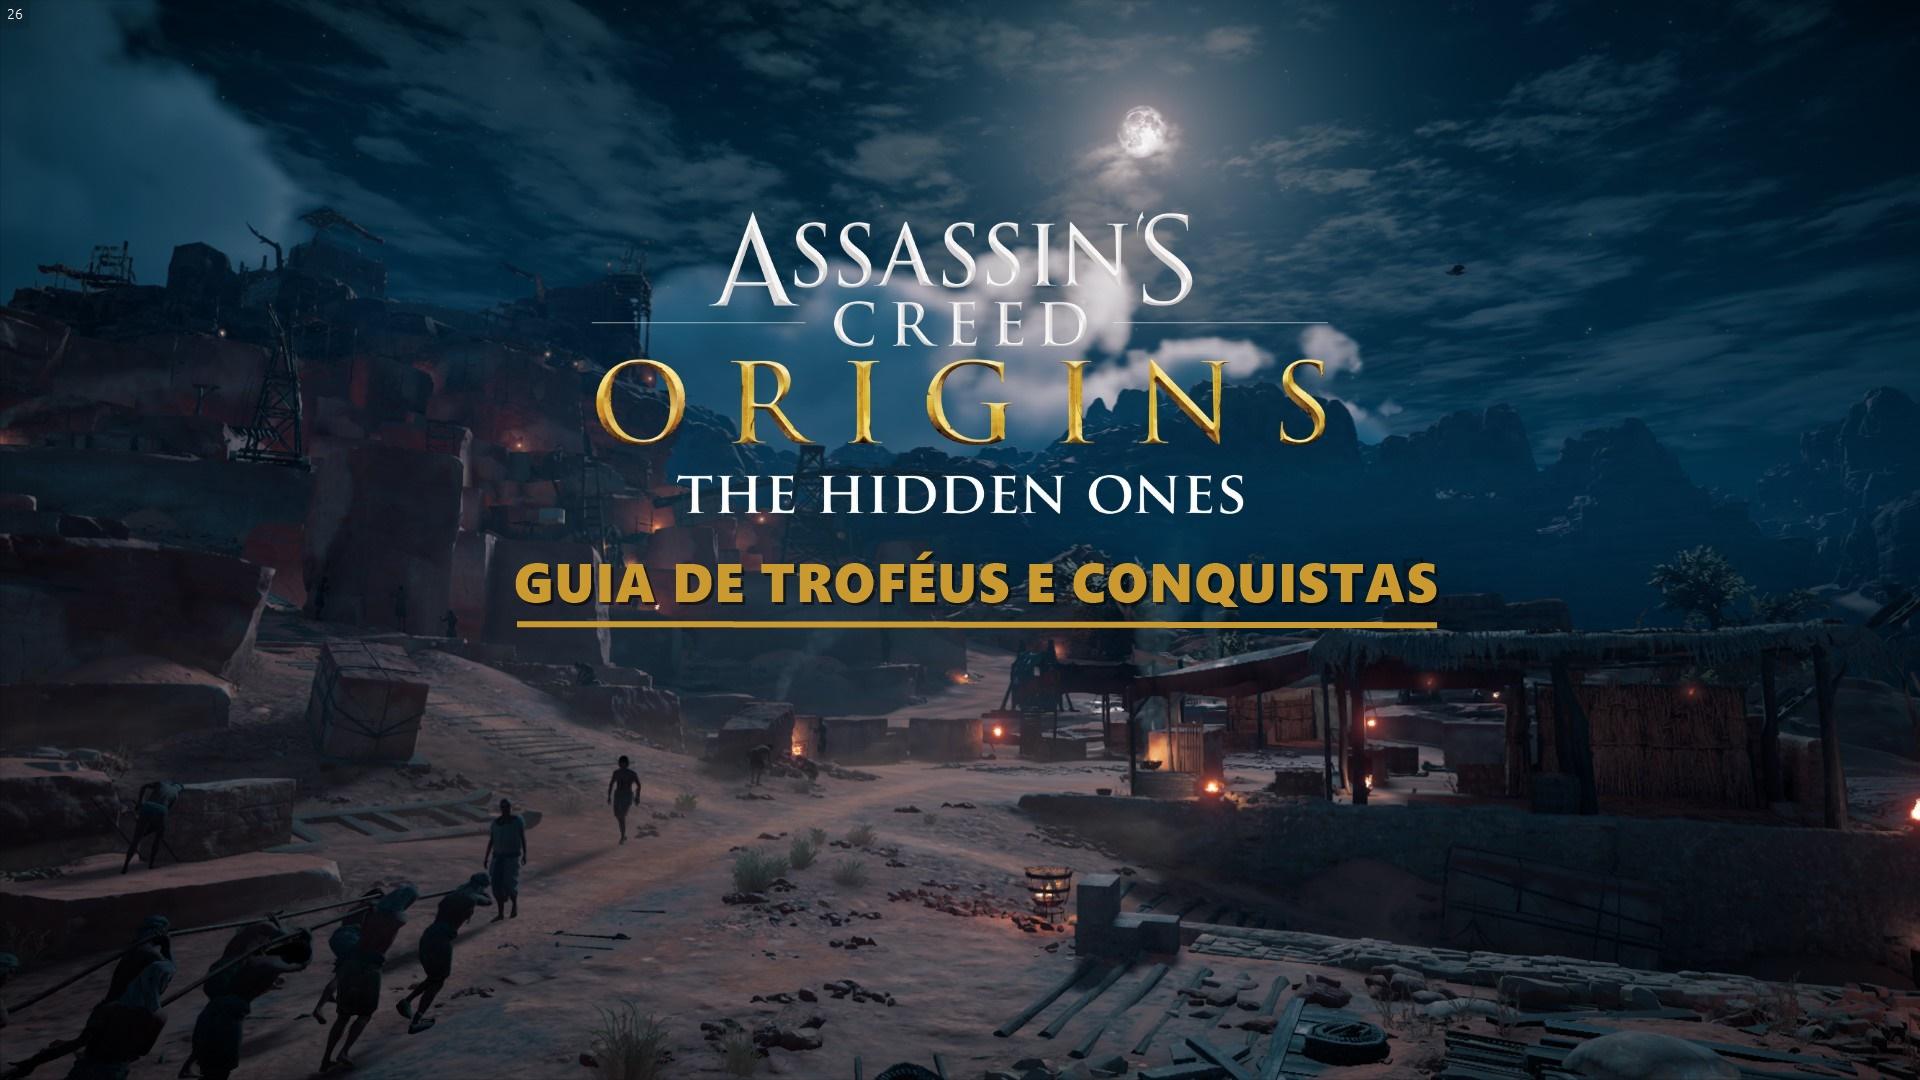 Guia de Troféus e Conquistas - Assassin's Creed Origins - The Hidden Ones